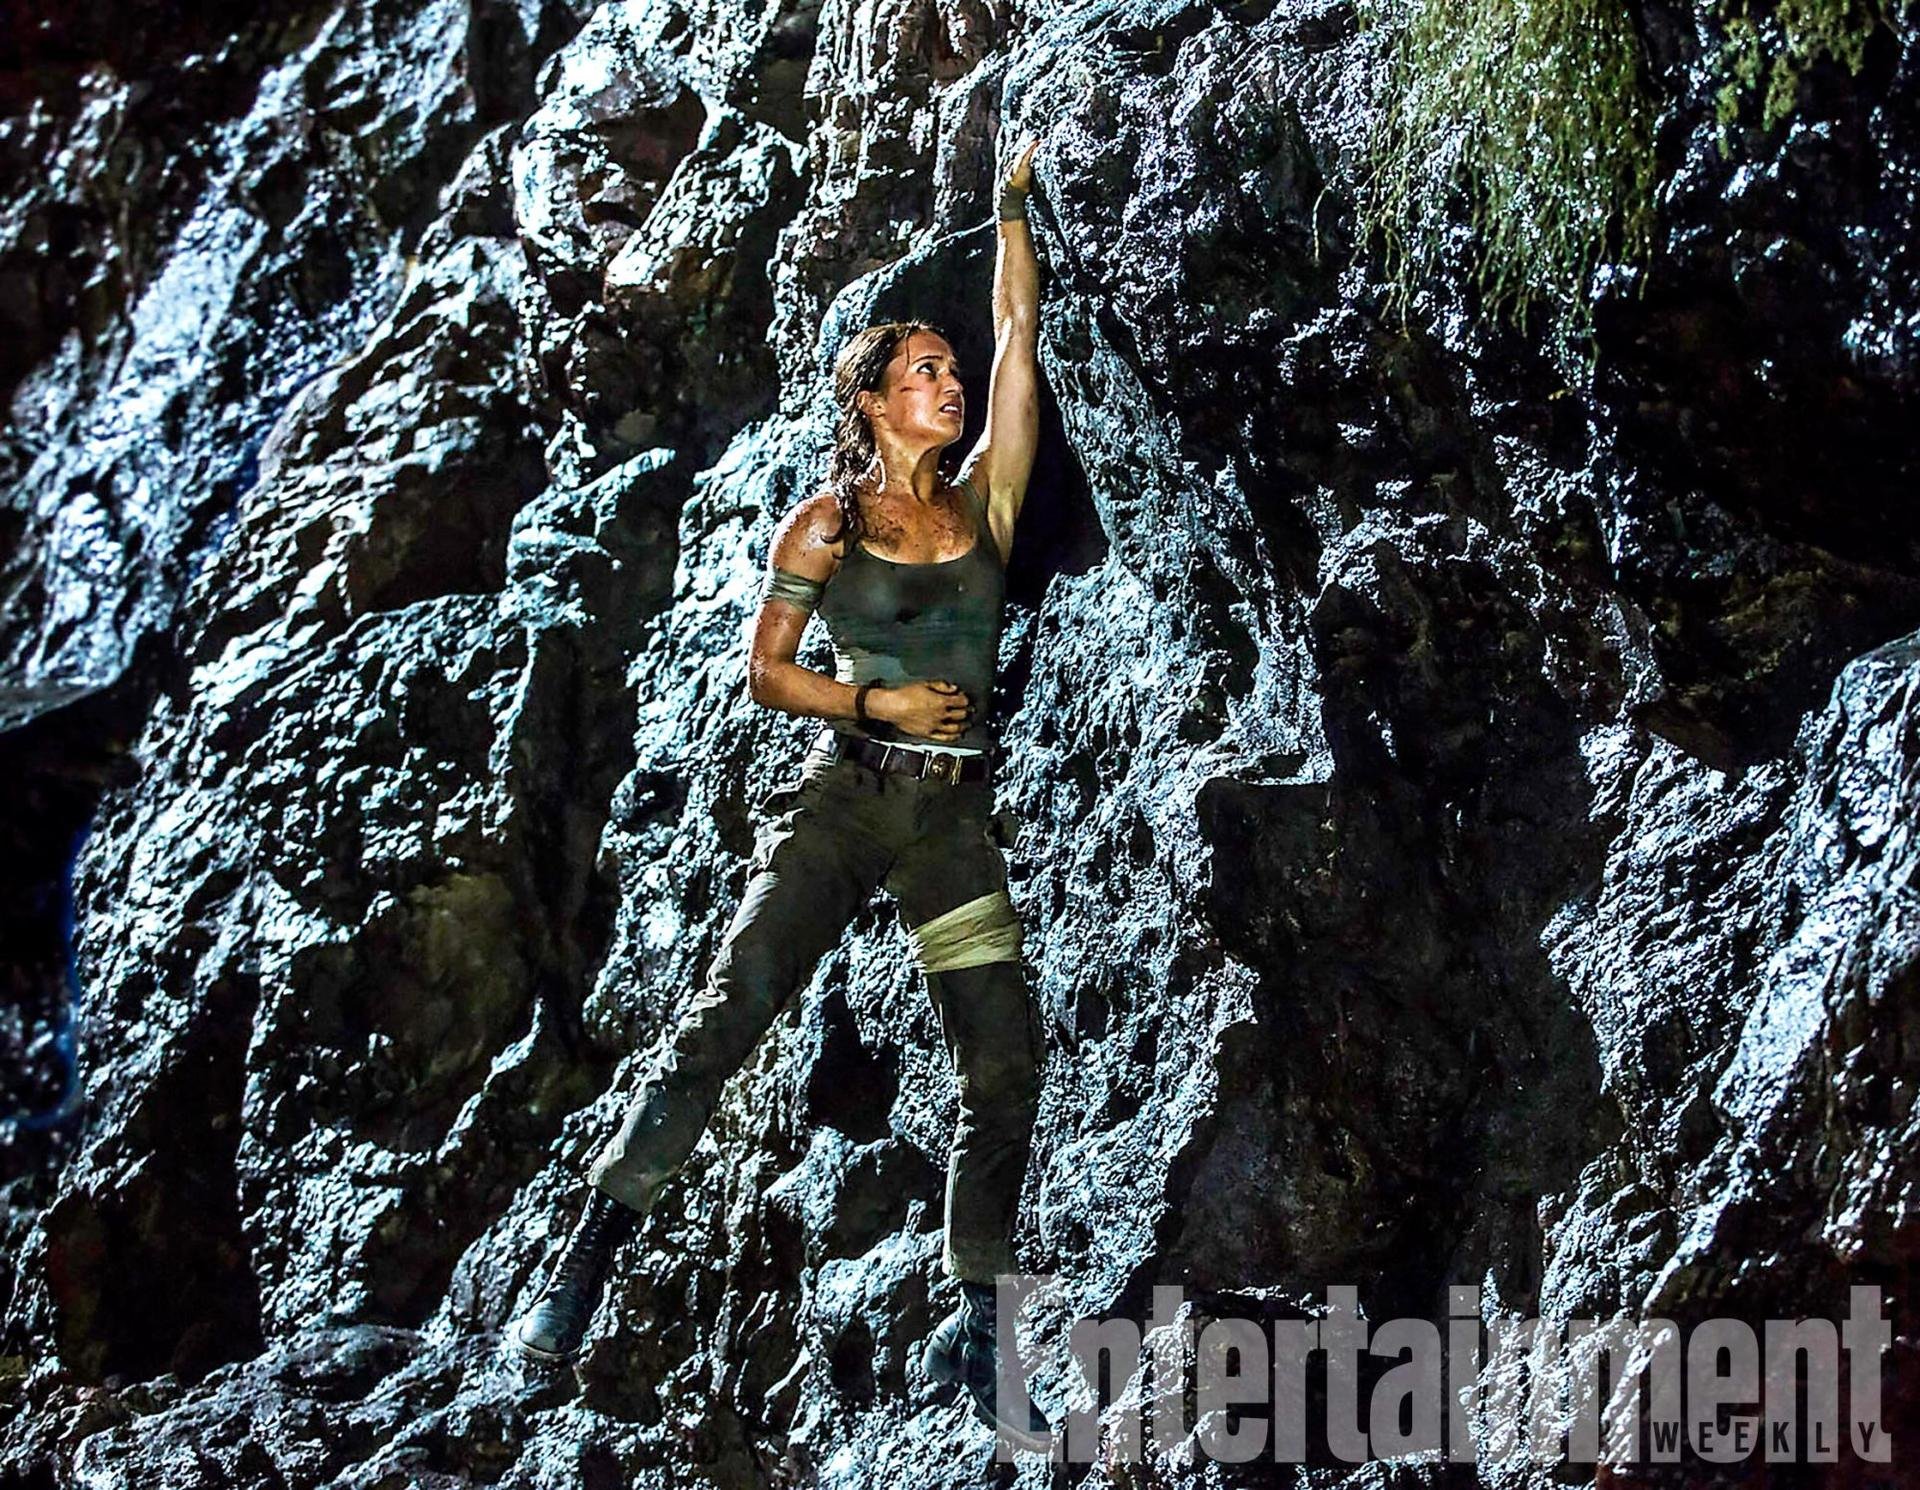 Tomb Raider: A Origem  Lara Croft corre em novos cartazes - NerdBunker